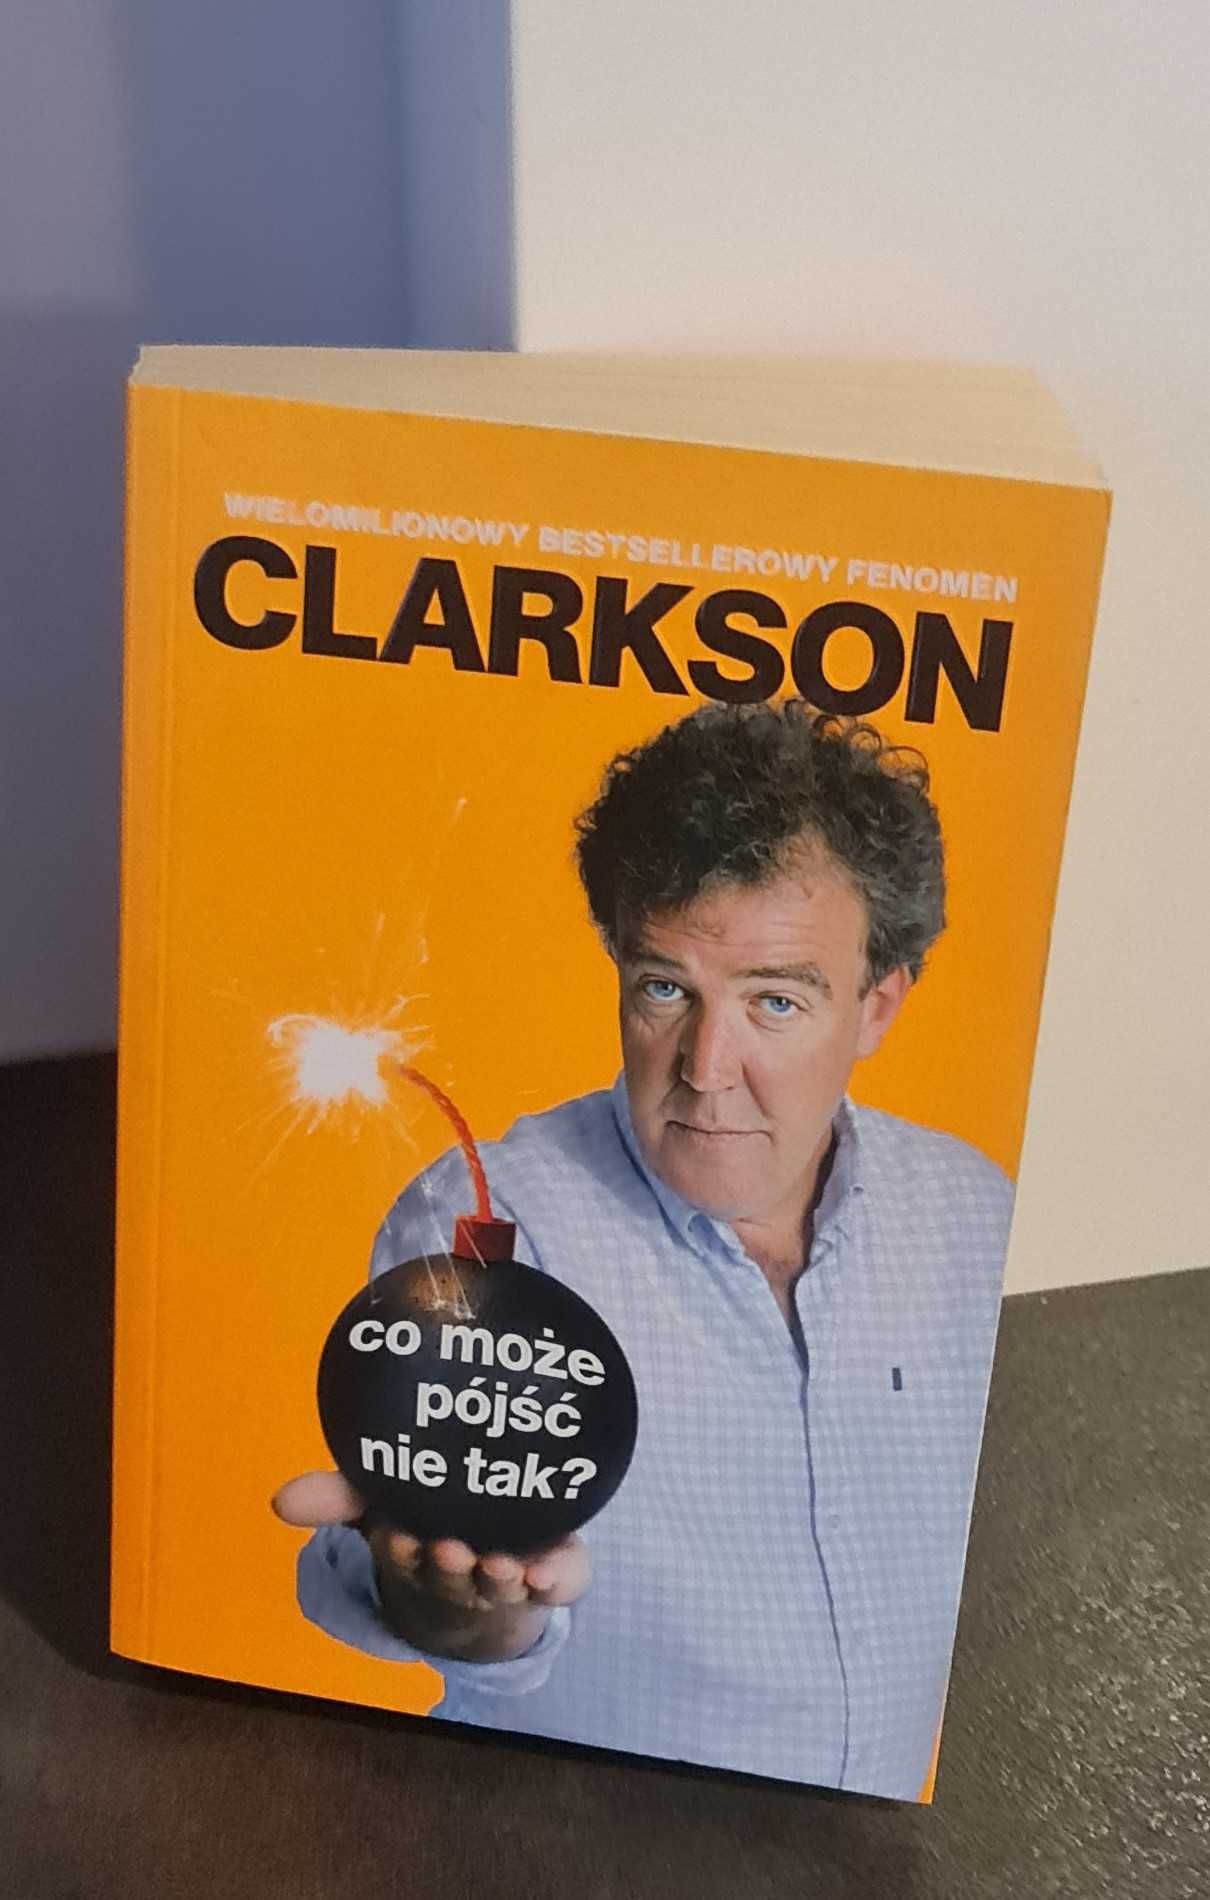 Jeremy Clarkson "Co może pójść nie tak?"